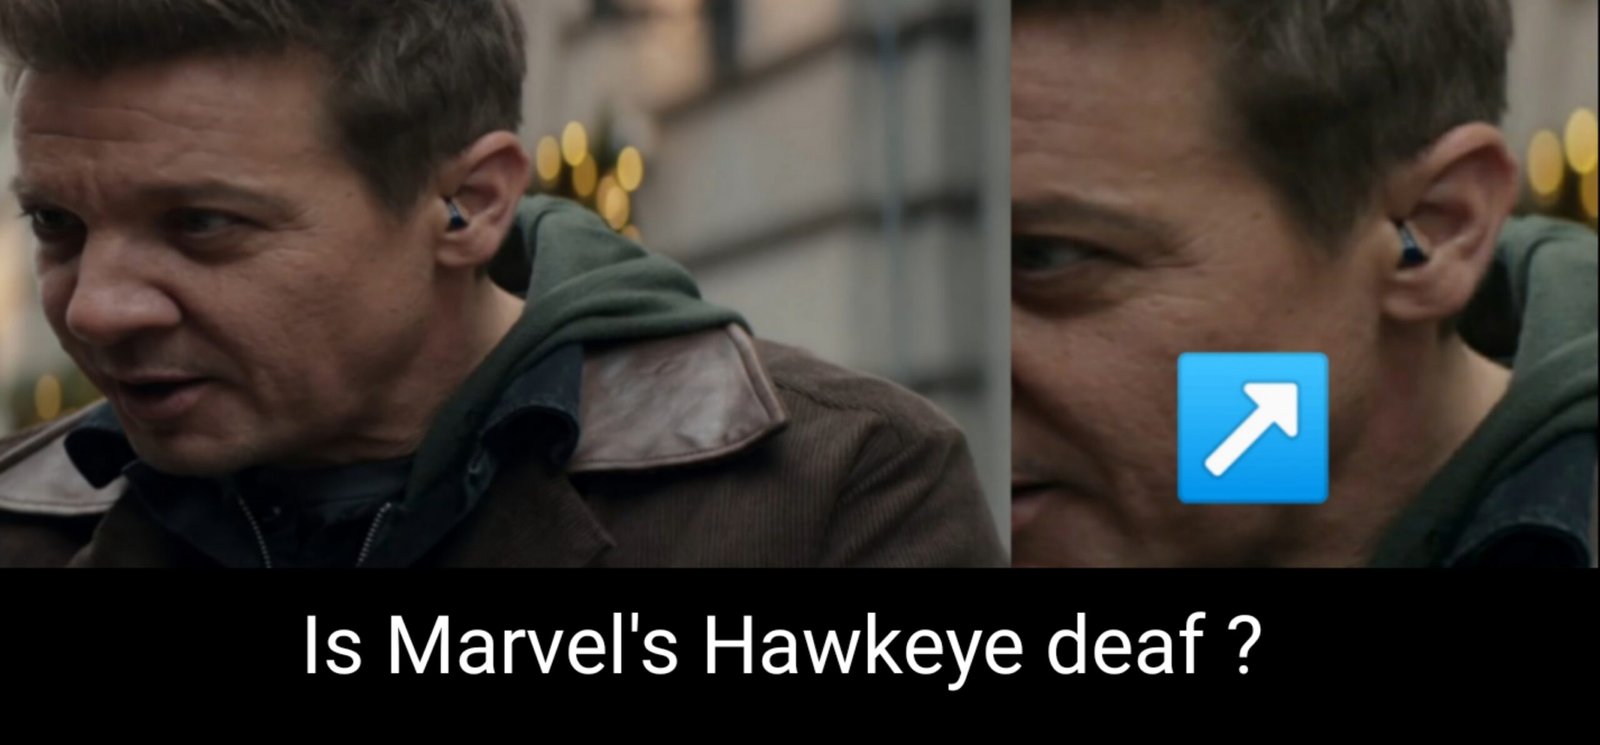 Marvel's Hawkeye :- Clint Barton/Hawkeye hawkeye is deaf (Credit - Marvel Studios)